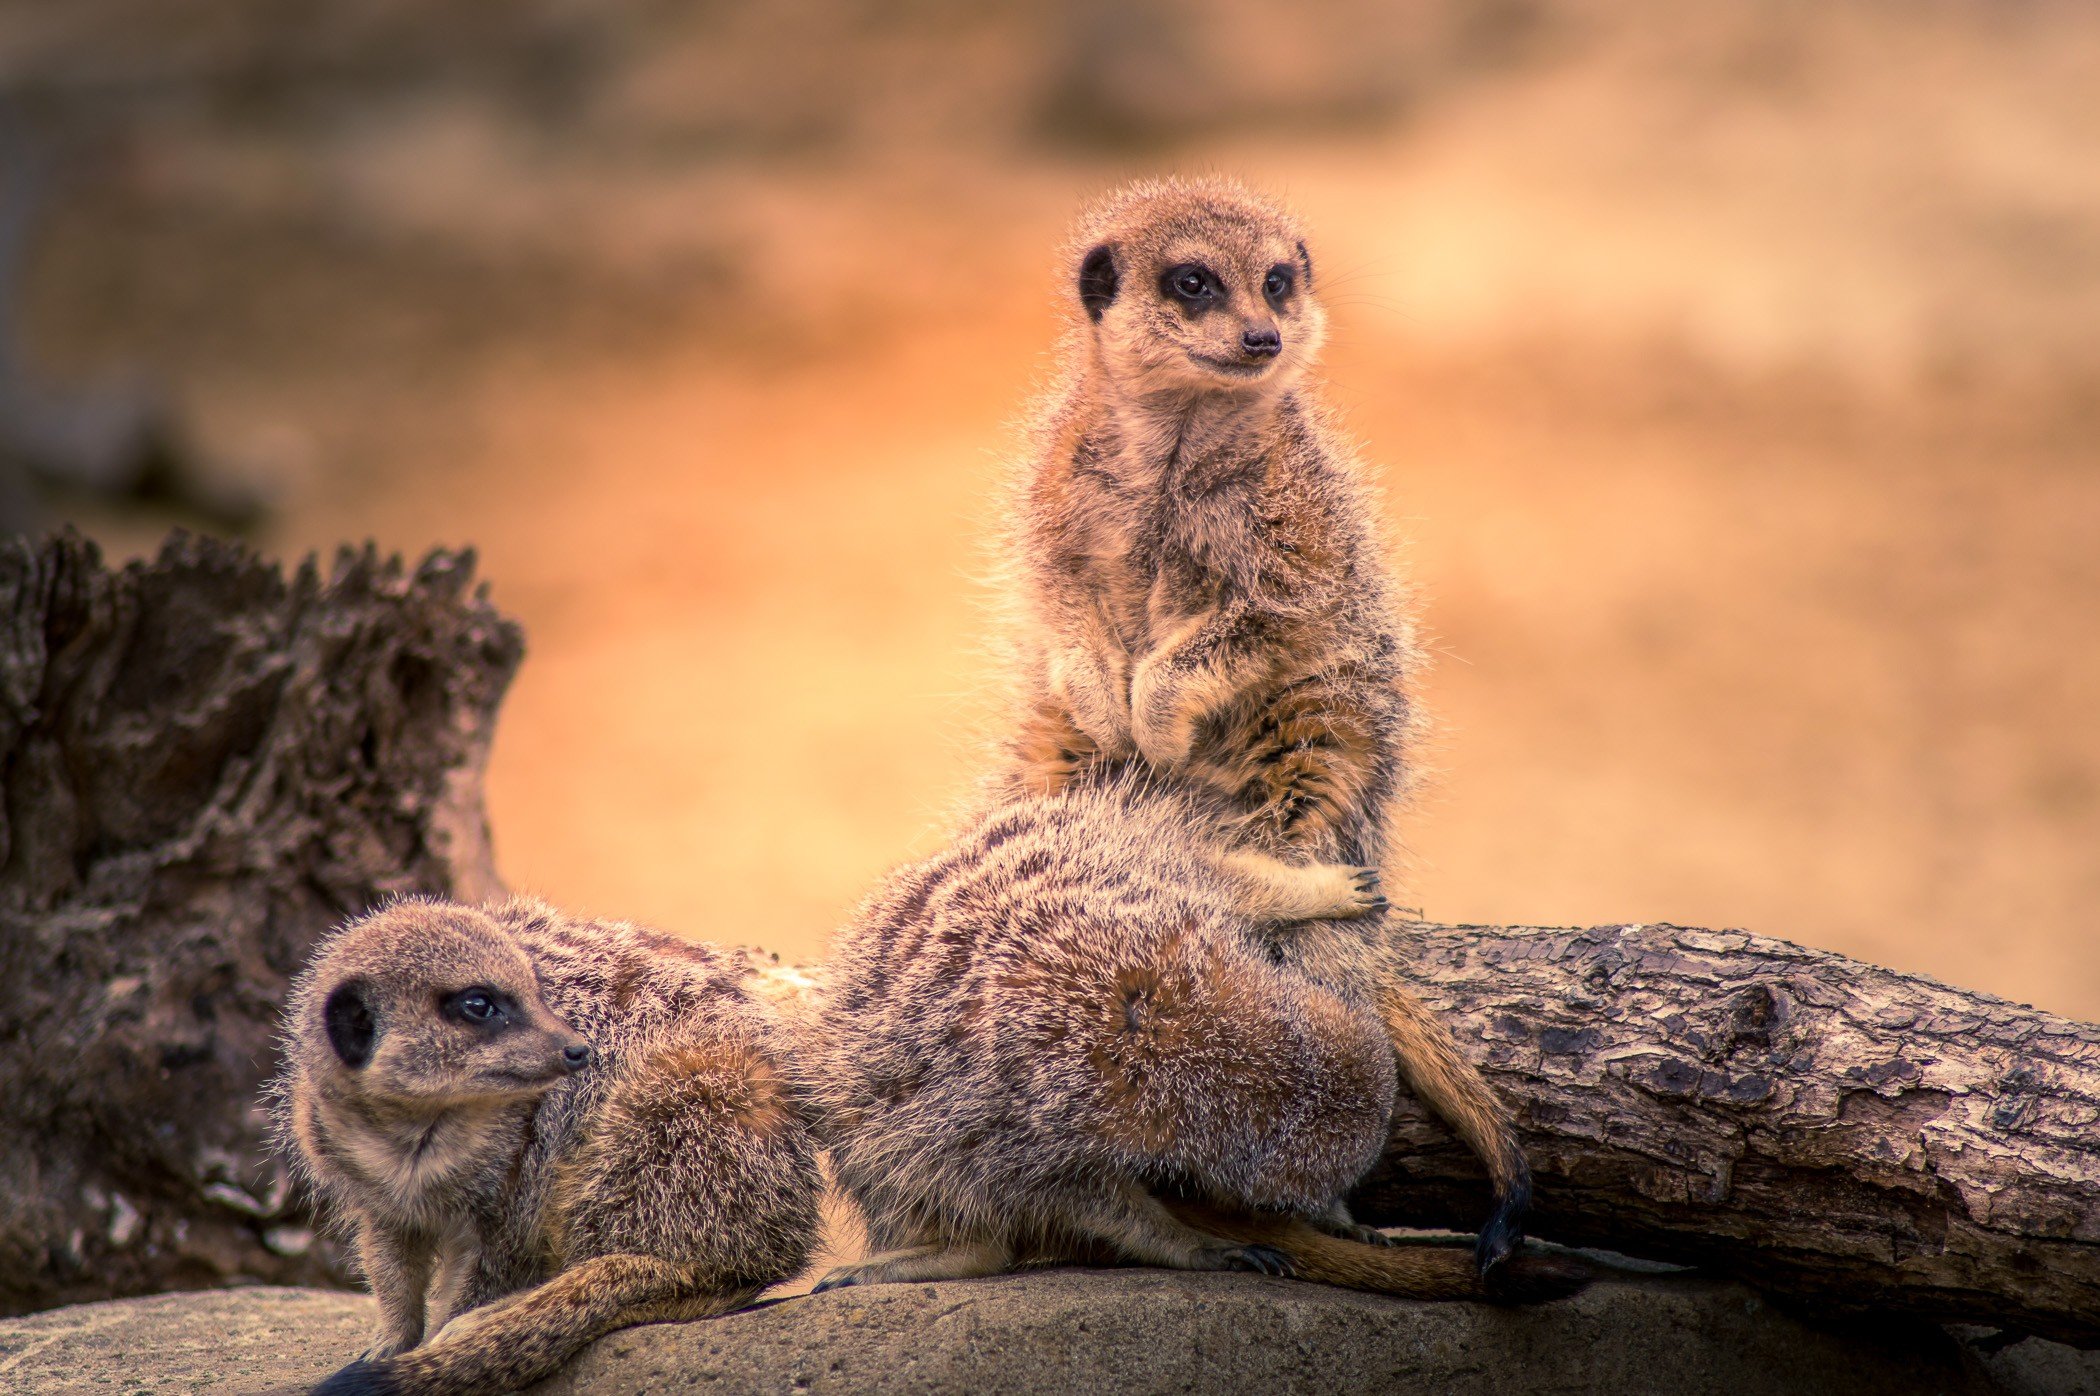 Meerkats On watch